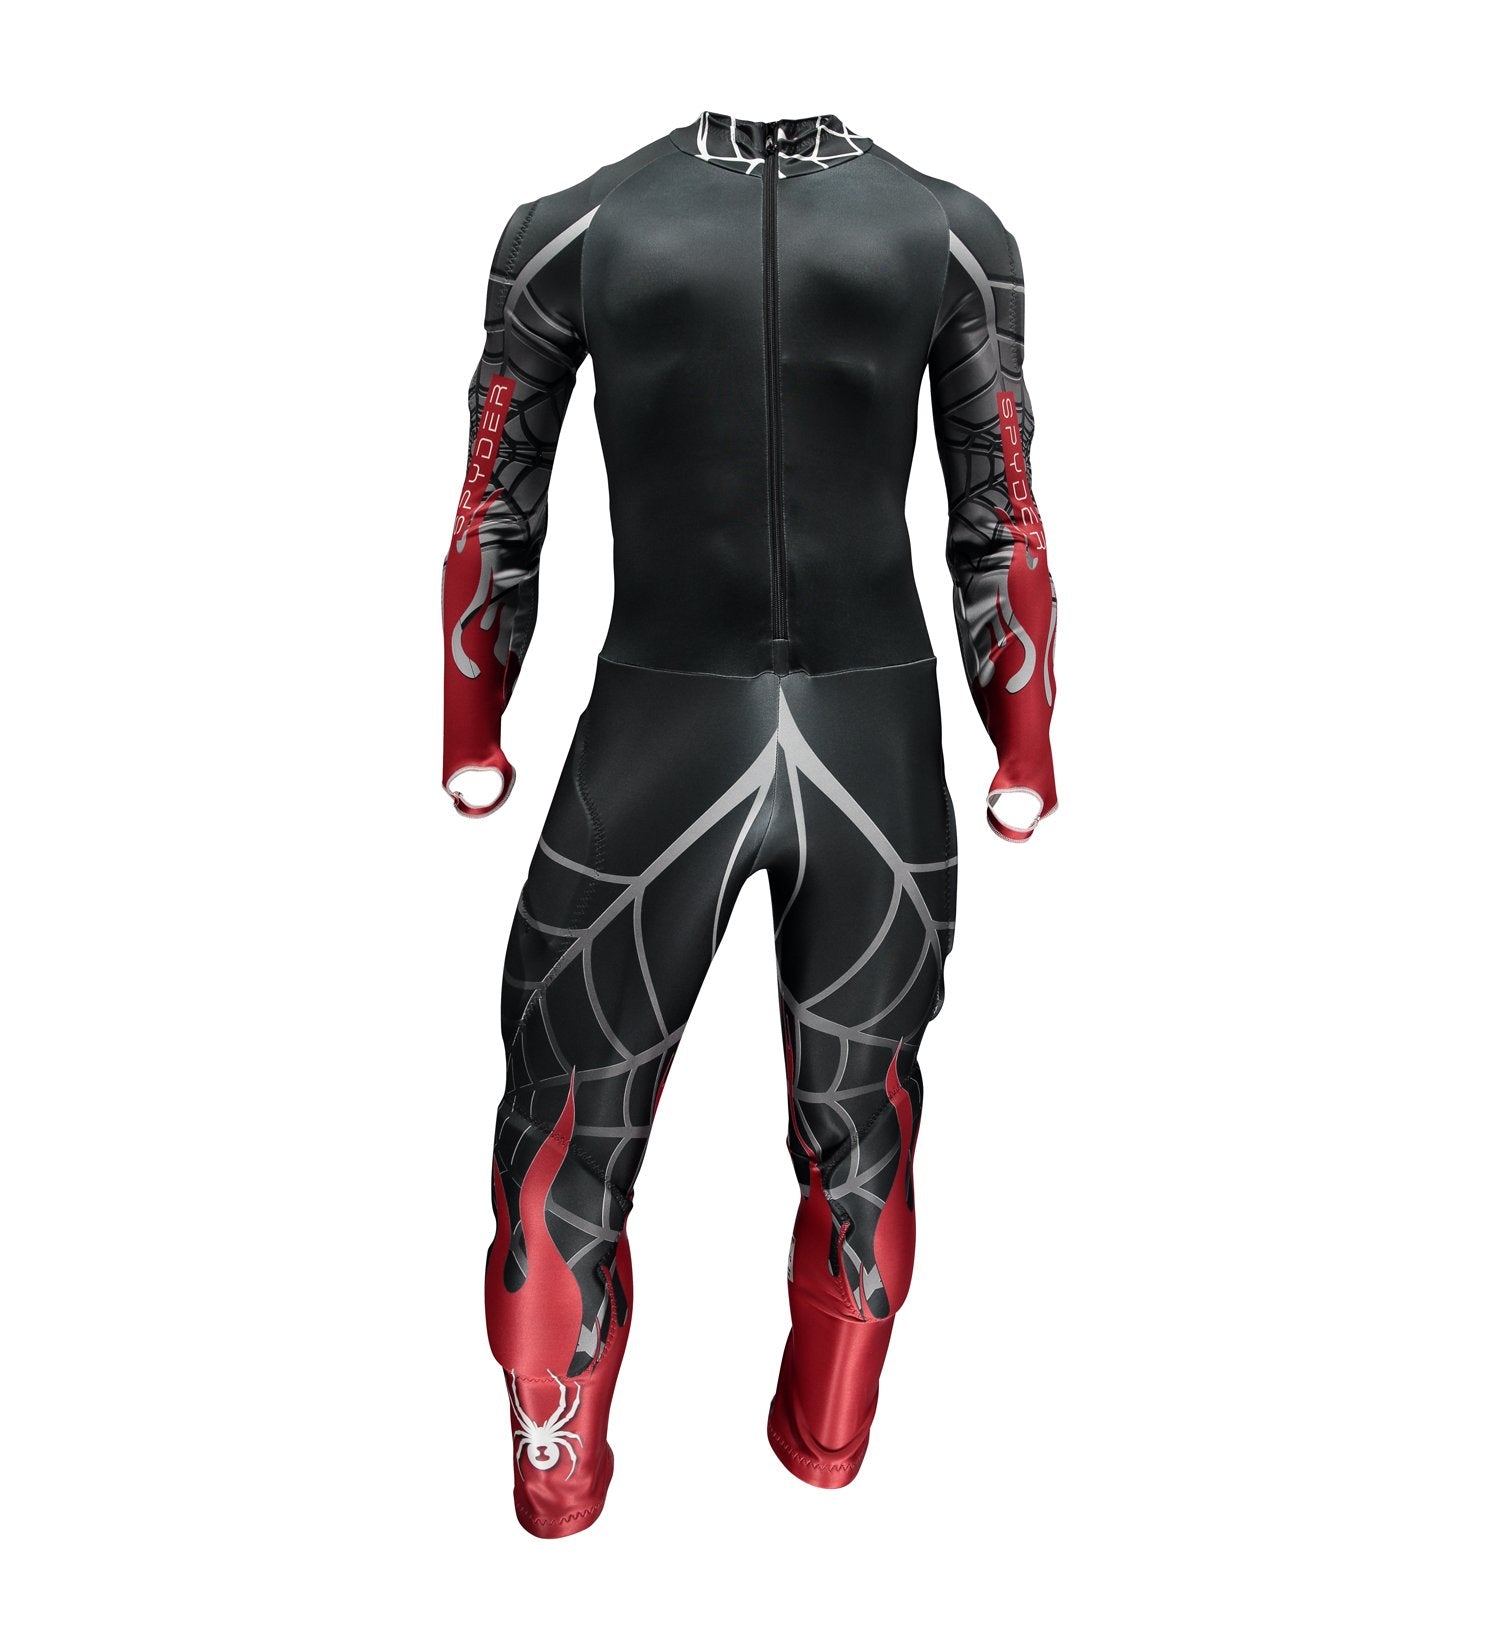 Spyder Performance GS Mens Race Suit 2019